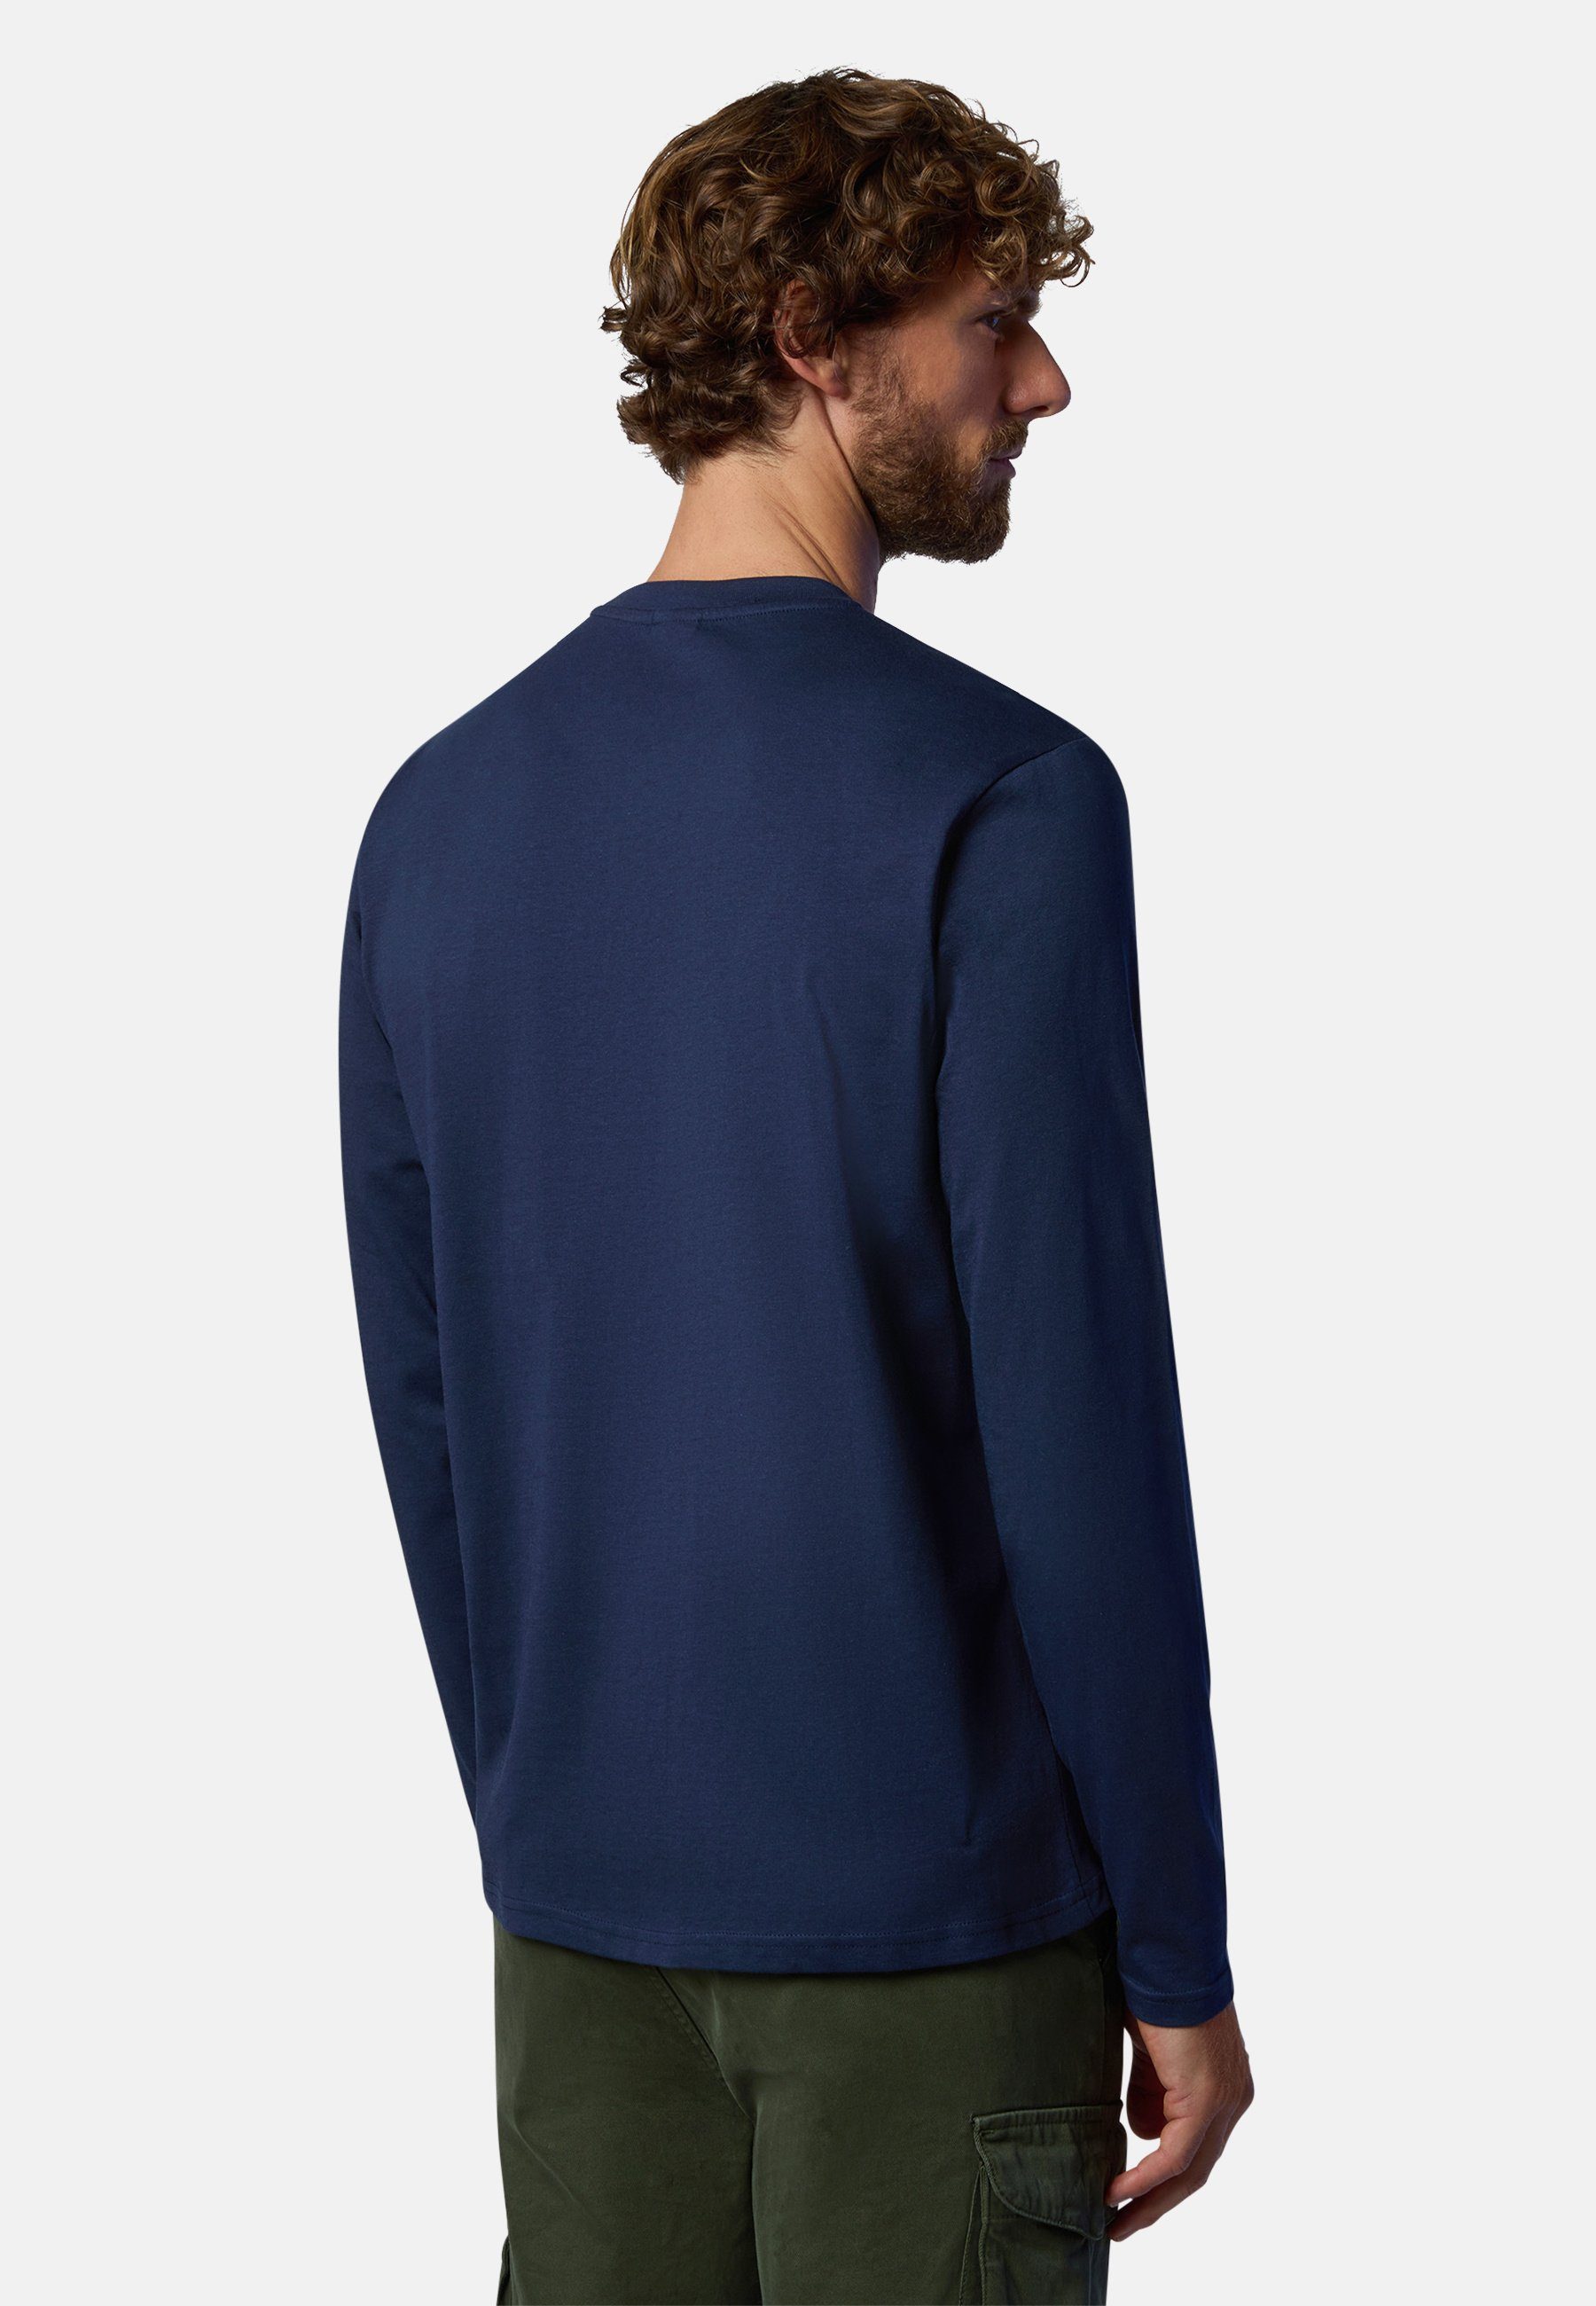 North Sails Logo-Aufnäher mit T-Shirt klassischem mit BLUE Design Langarm-T-Shirt